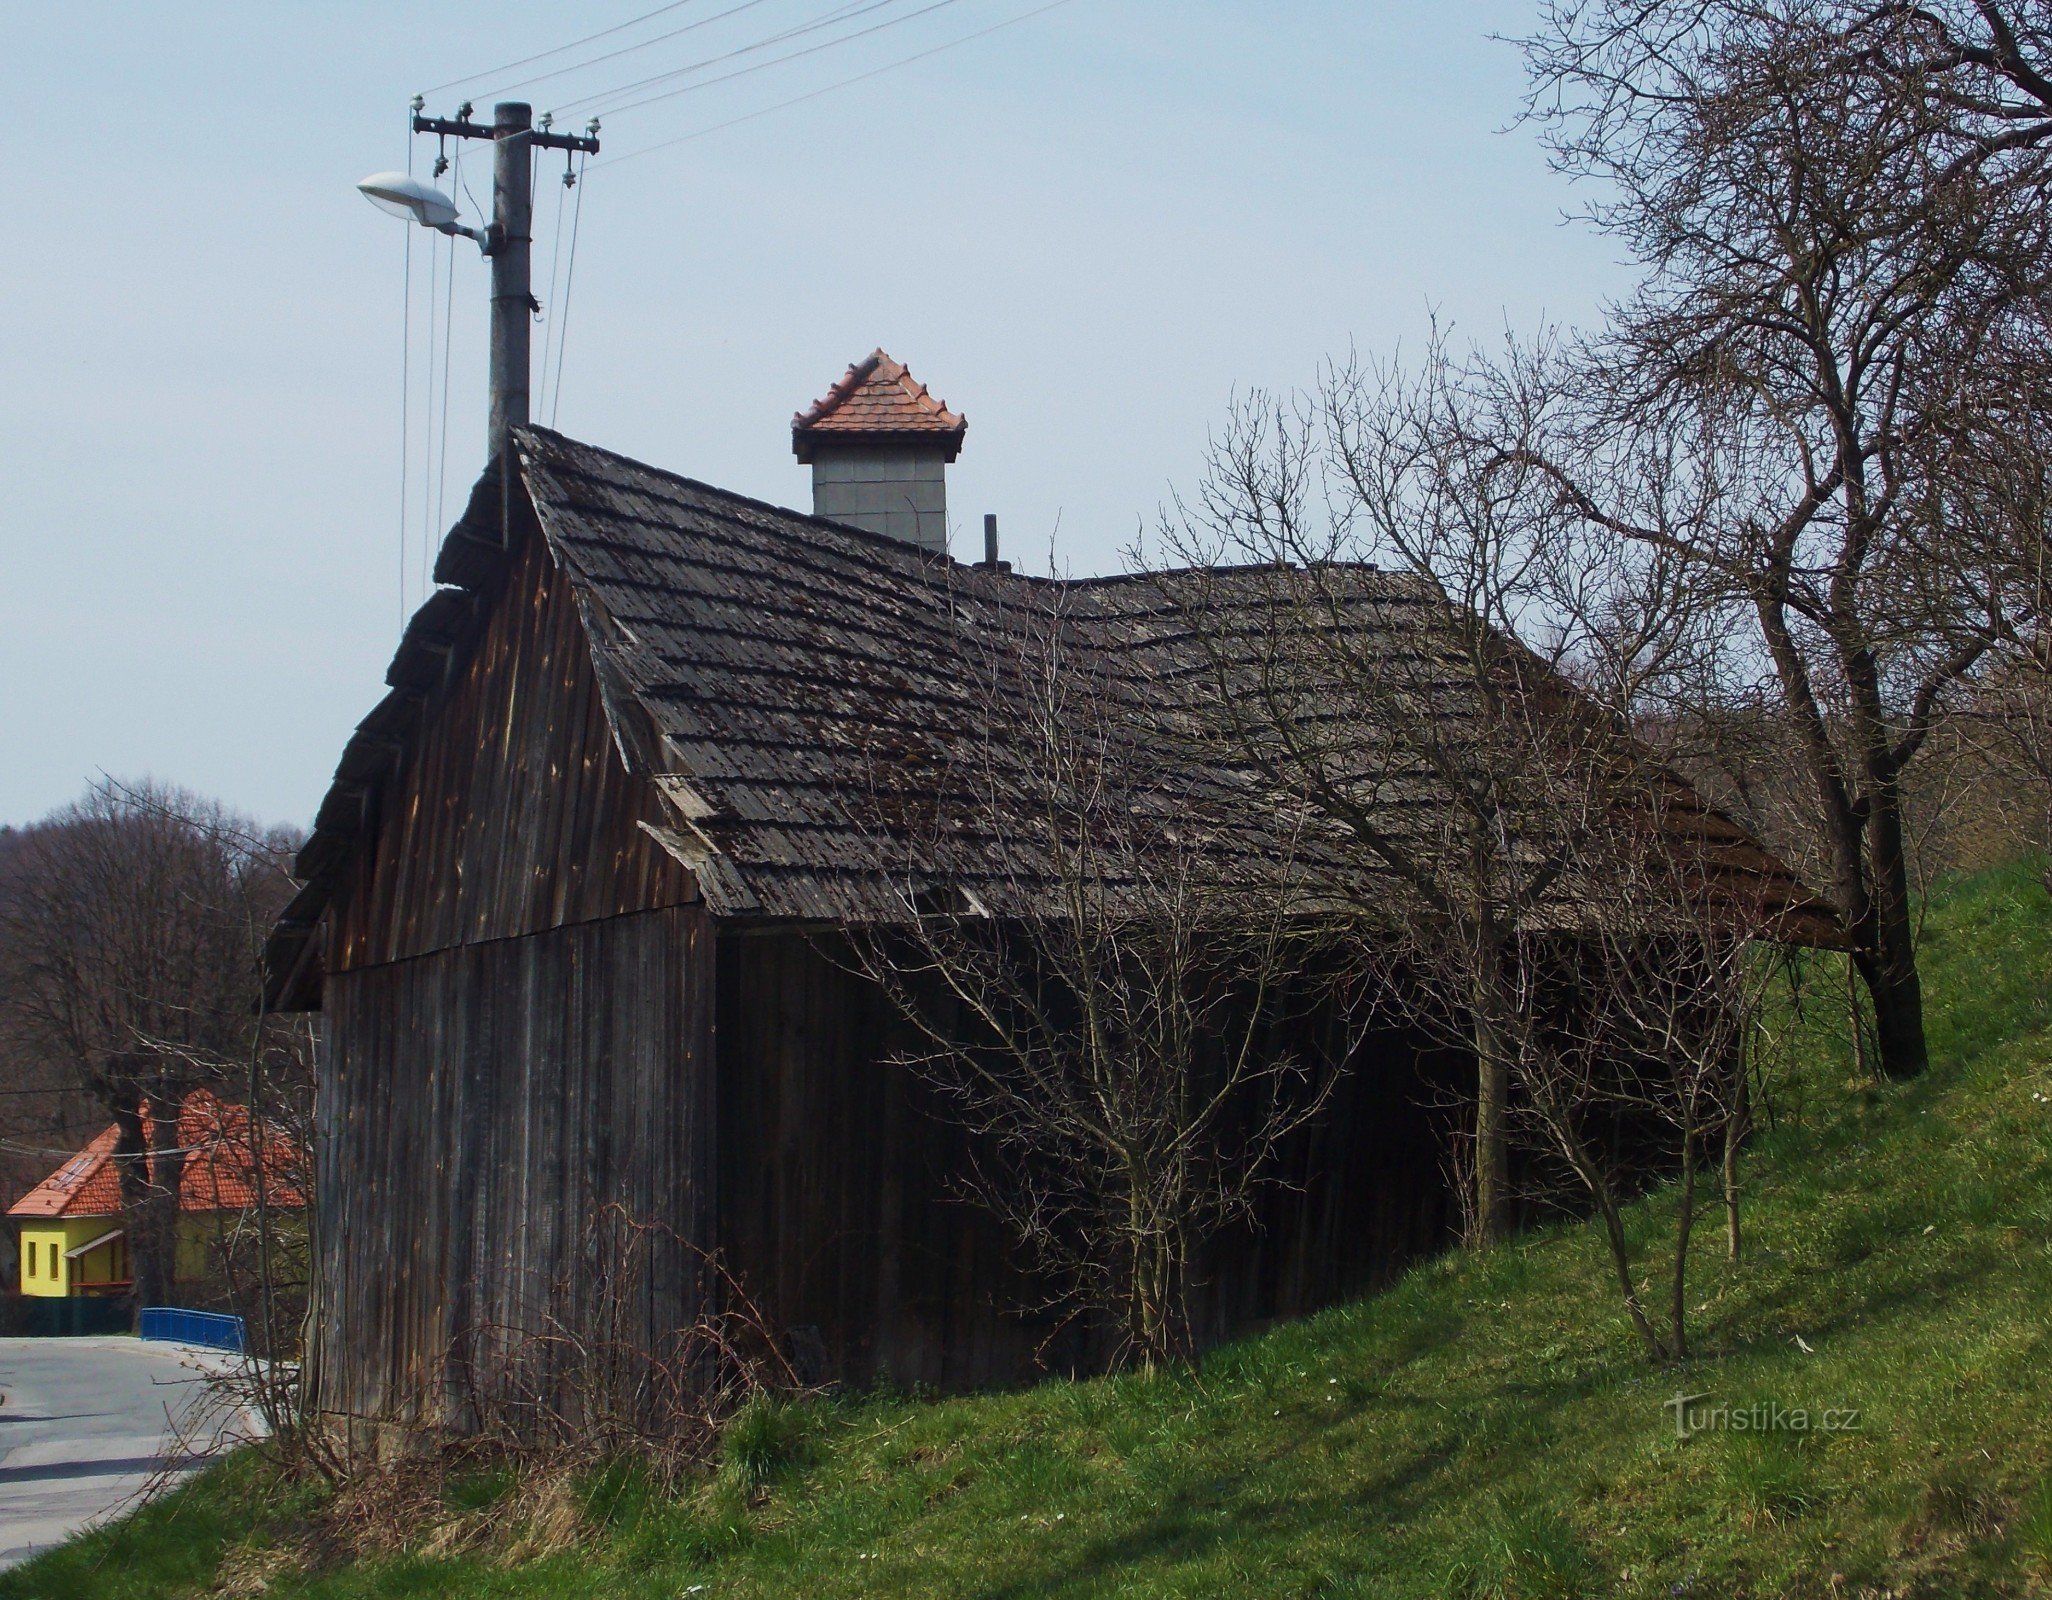 Březnice, un villaggio nella regione di Zlín